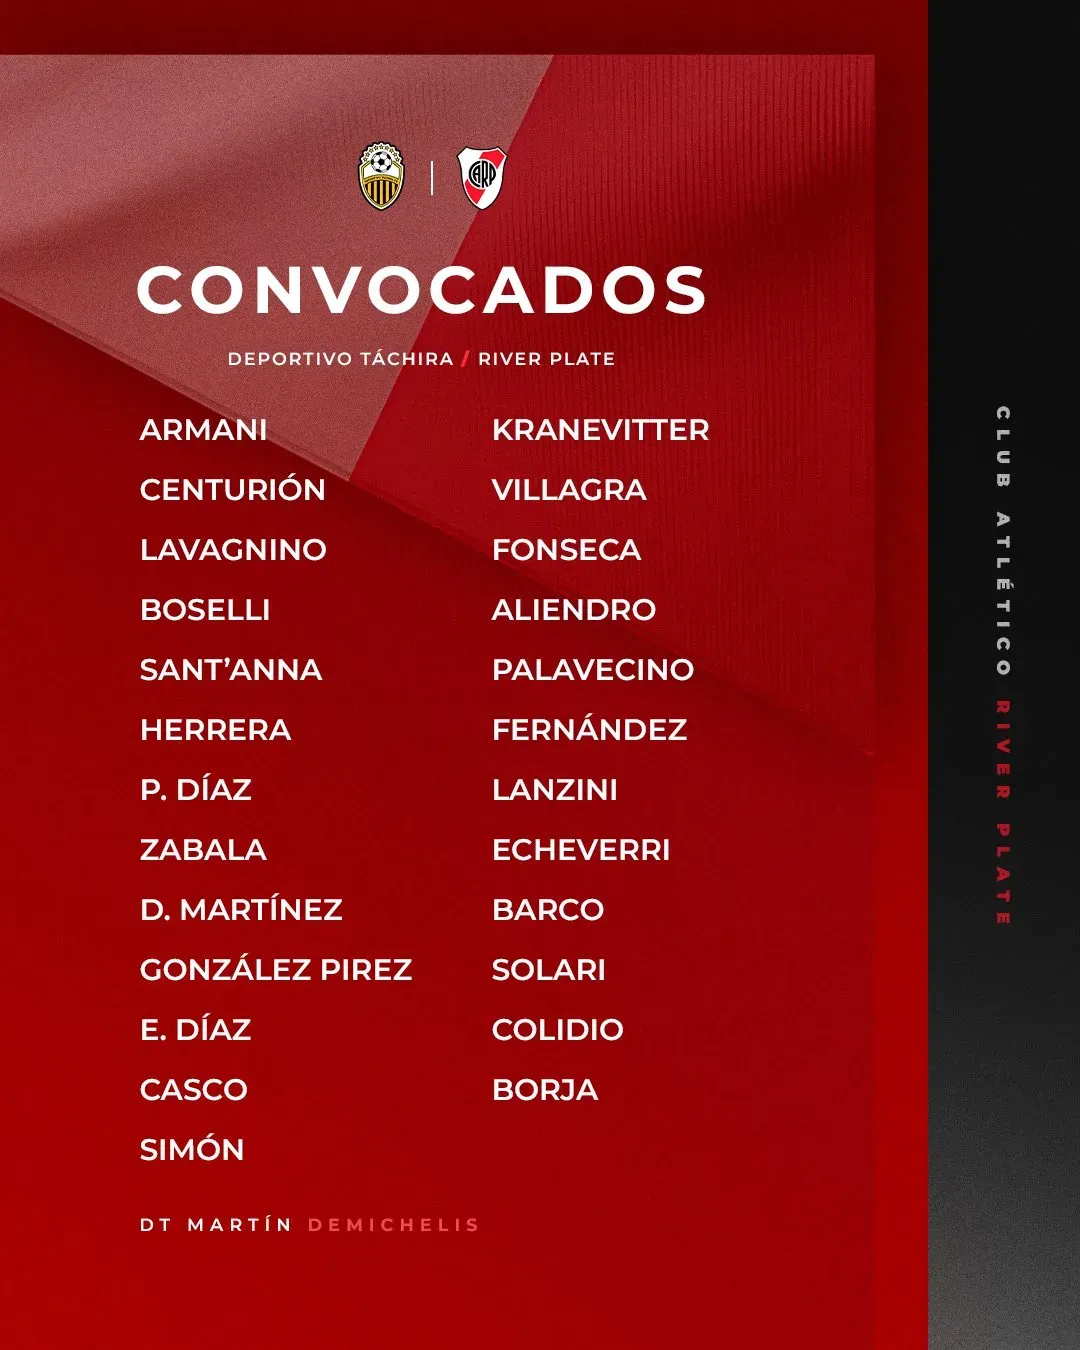 Los convocados para la Copa Libertadores